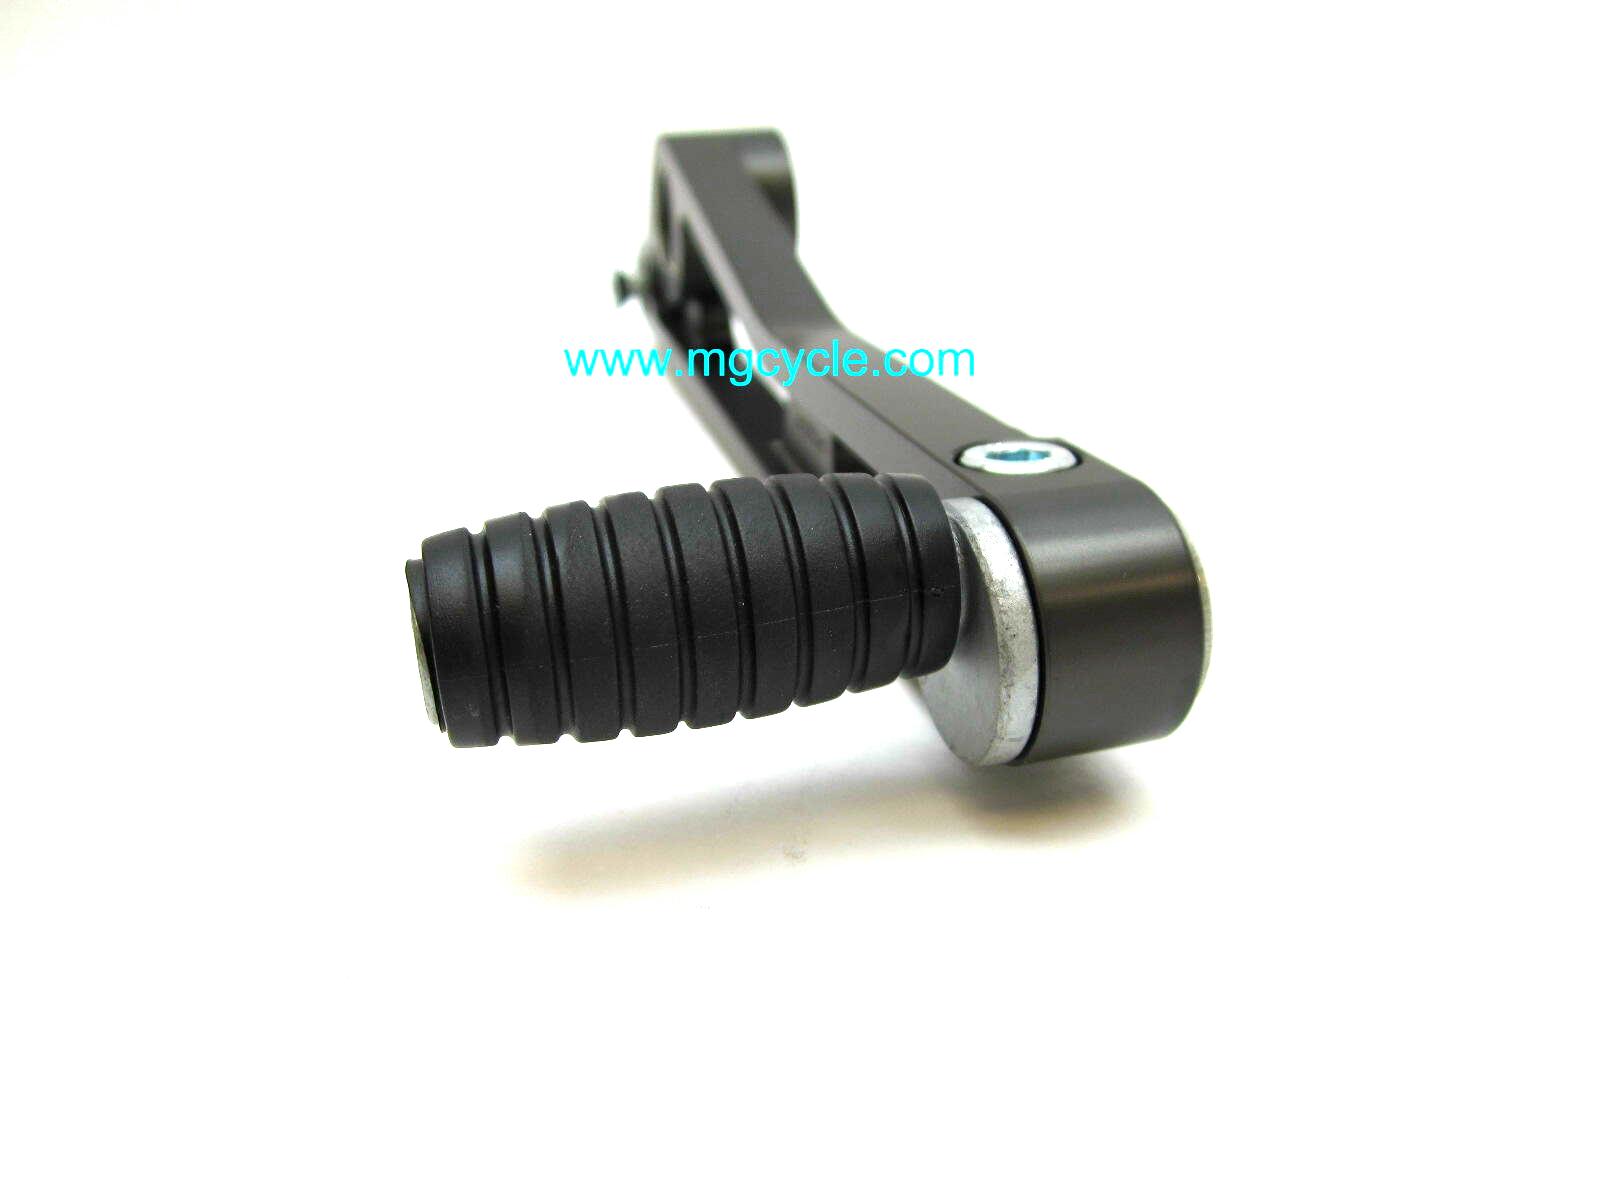 Brake pedal w/adjustable toe, black, 1100 spine frames - Click Image to Close